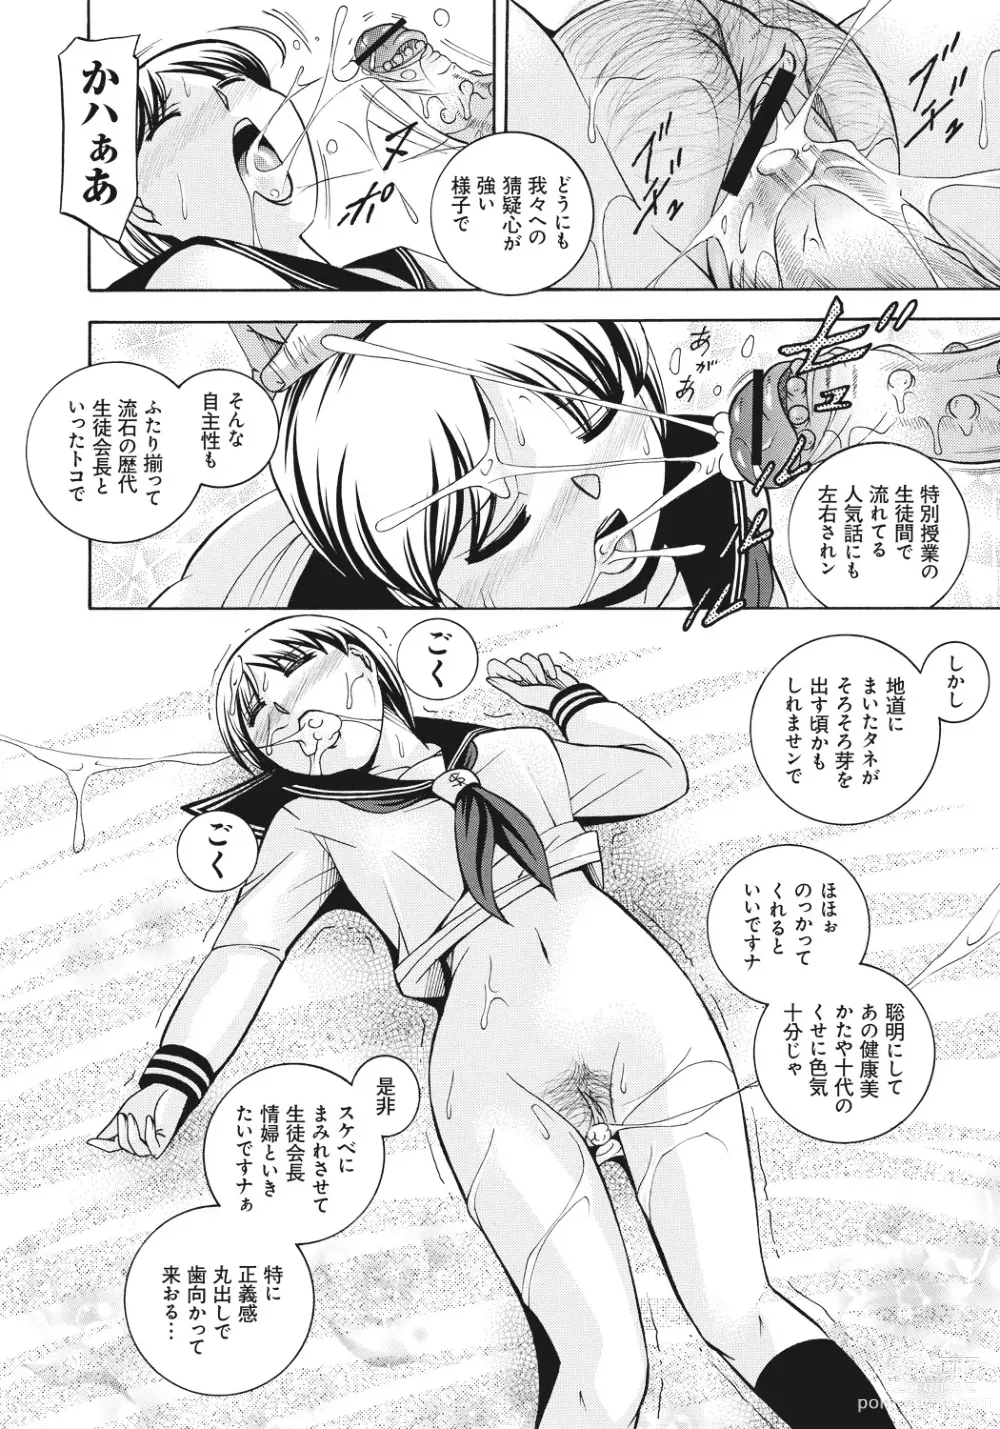 Page 7 of manga Student Council President Mitsuki